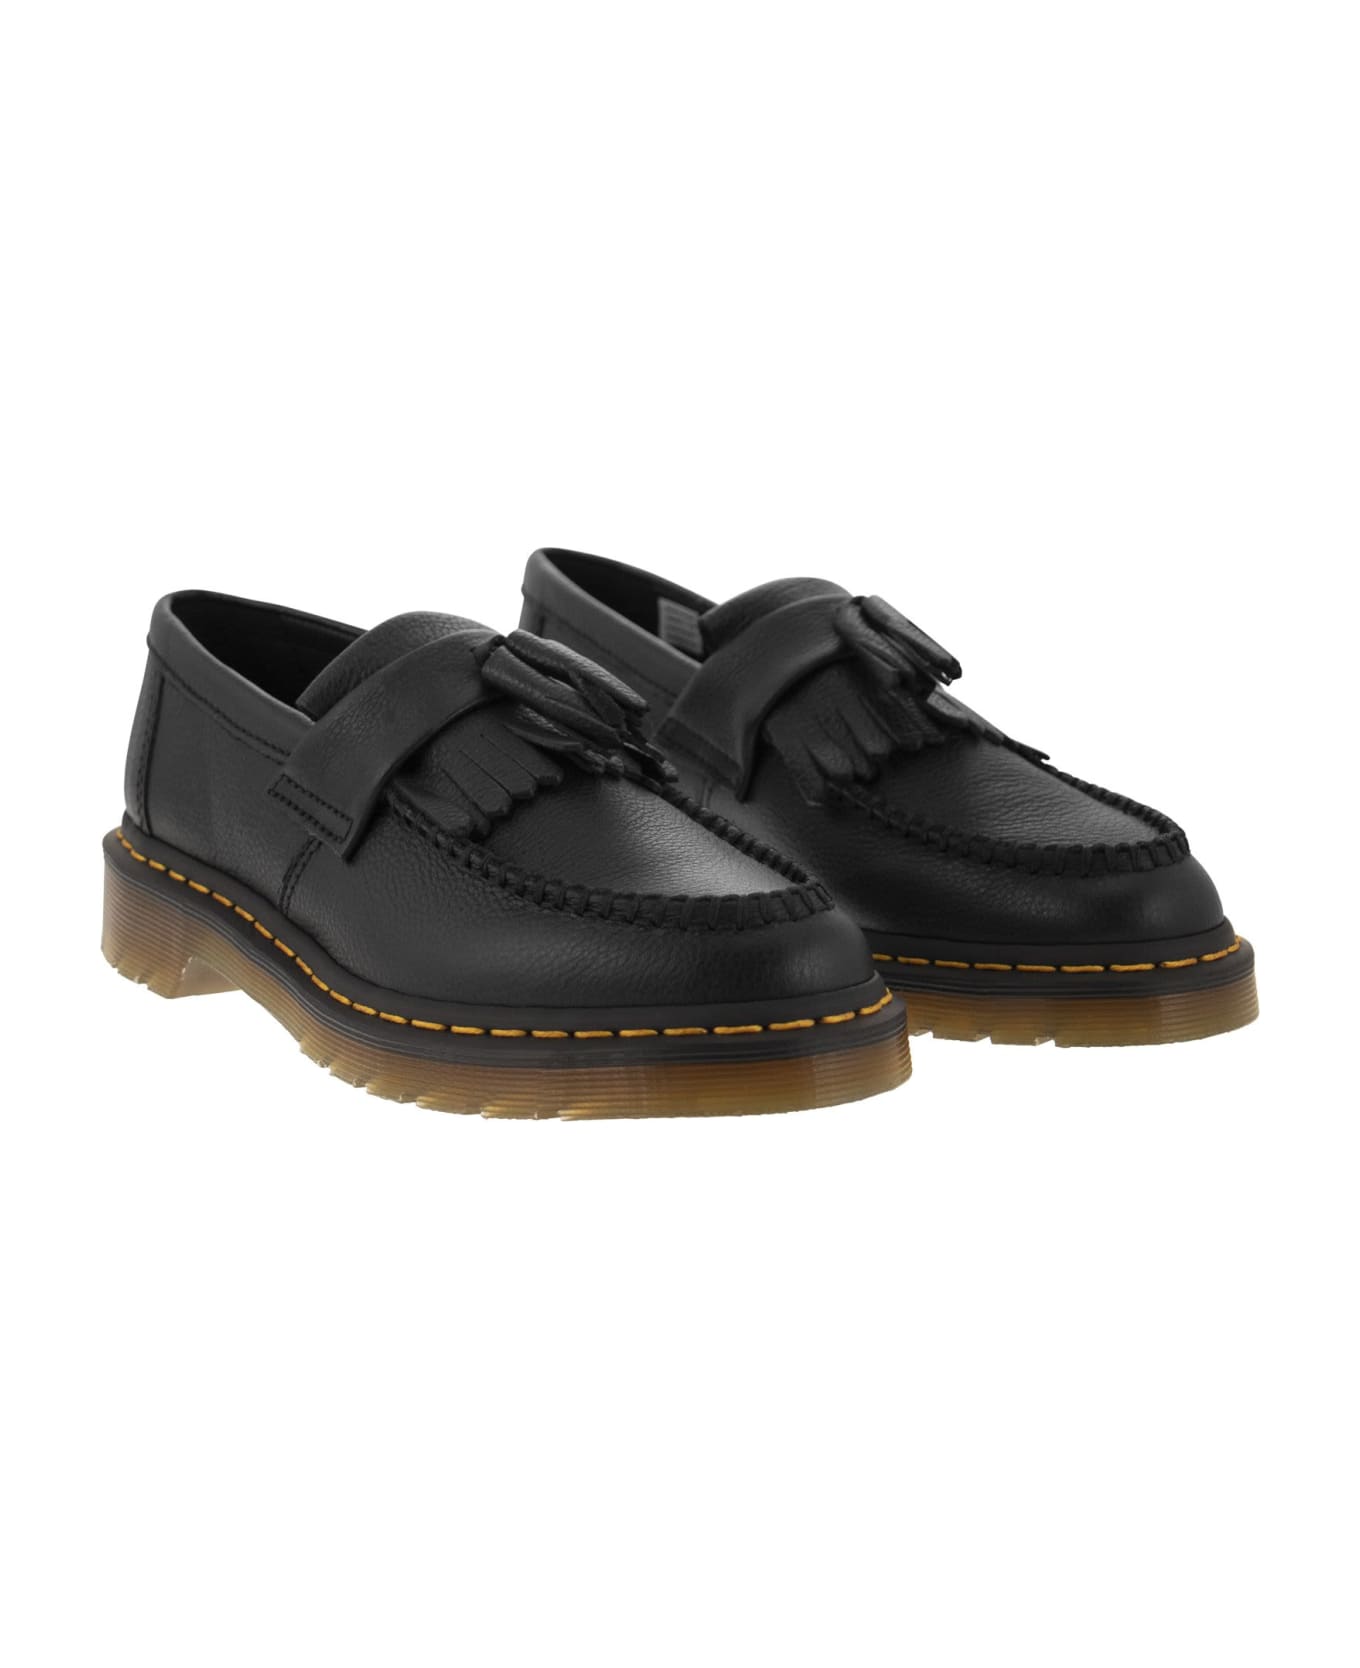 Dr. Martens Adrian Tassel Detailed Loafers - Black